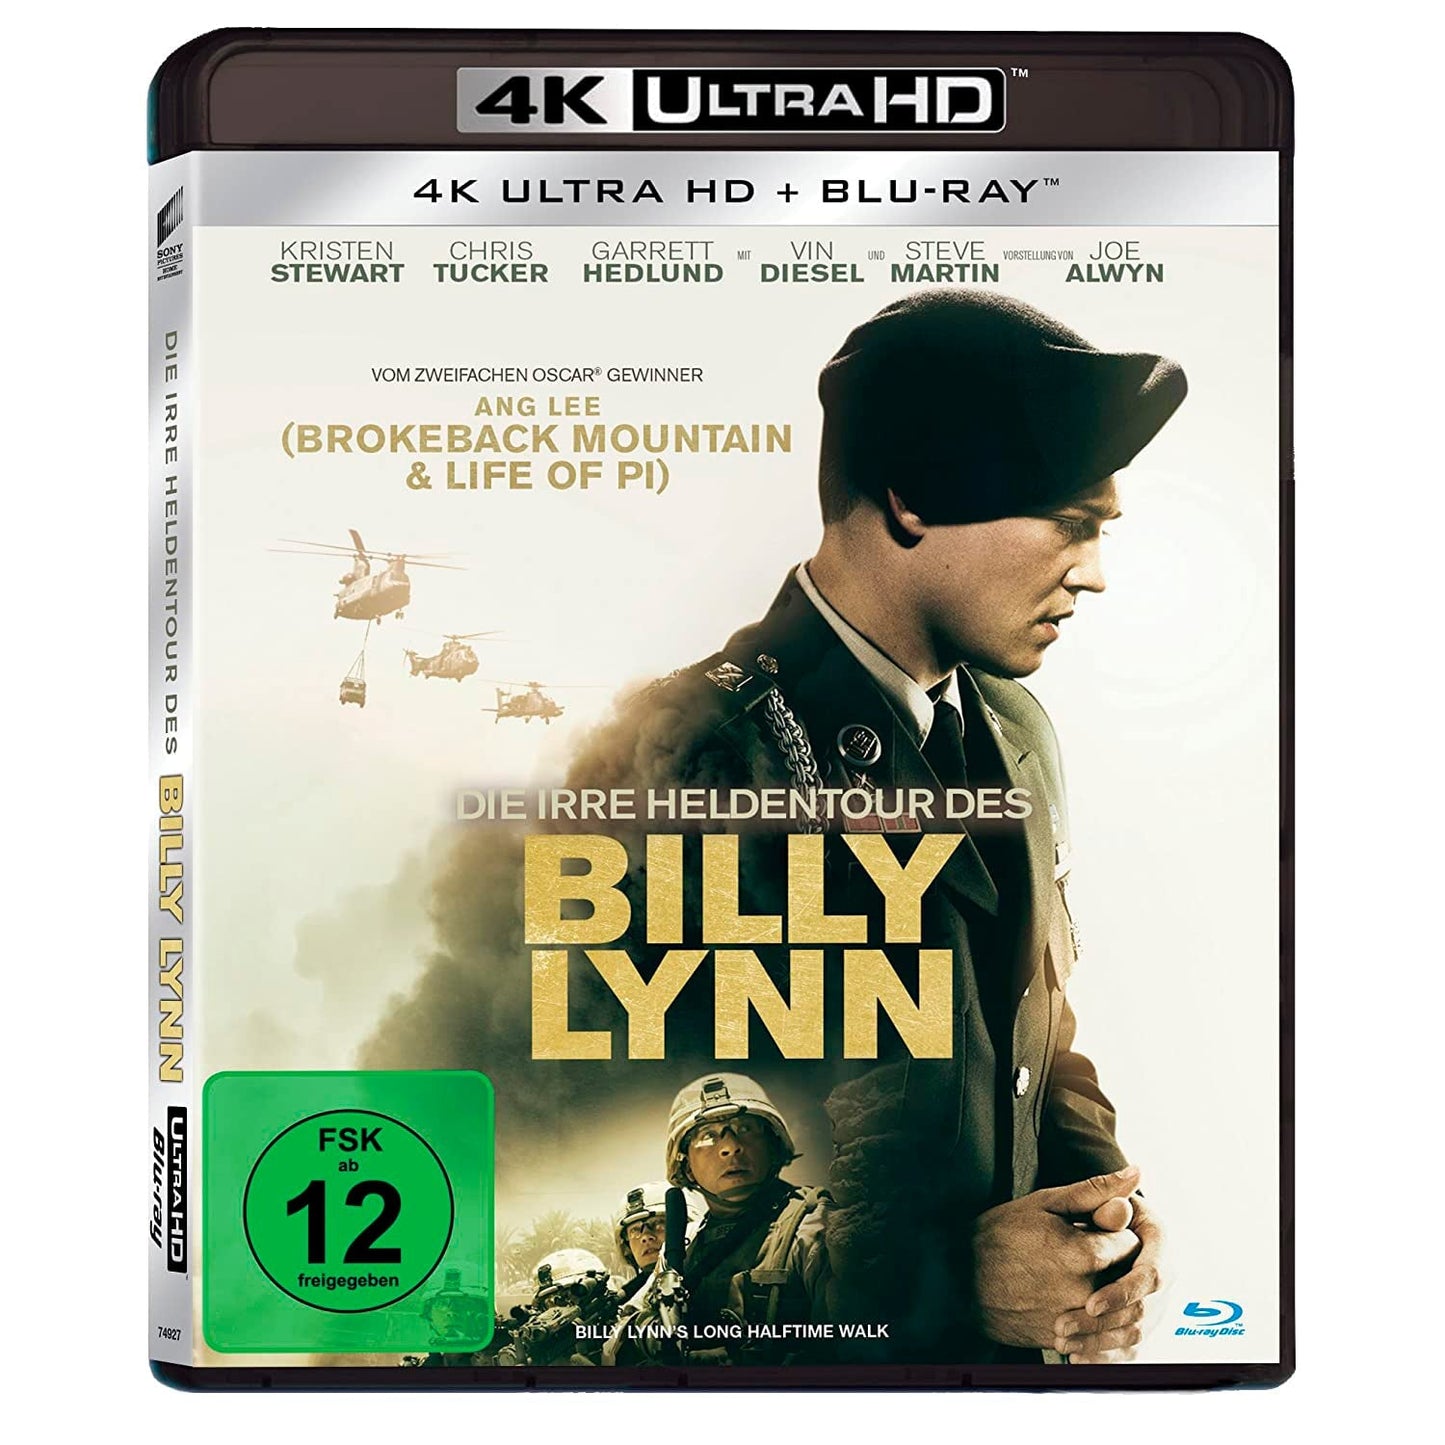 Долгий путь Билли Линна в перерыве футбольного матча (4K UHD Blu-ray)